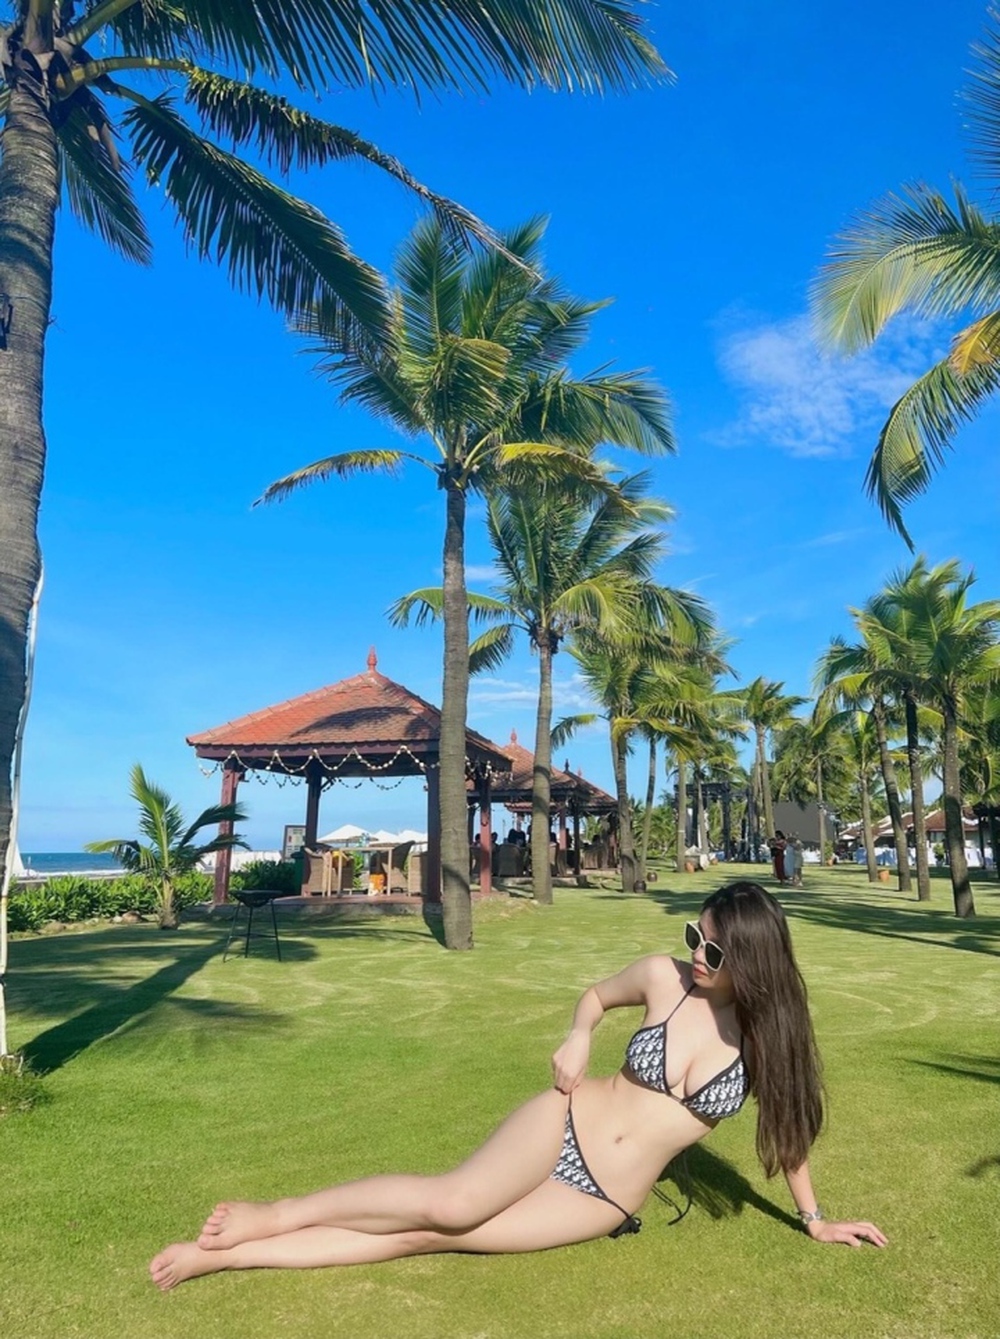 Nữ tuyển thủ Việt Nam tung ảnh bikini quyến rũ gây sốt mạng xã hội - ảnh 3